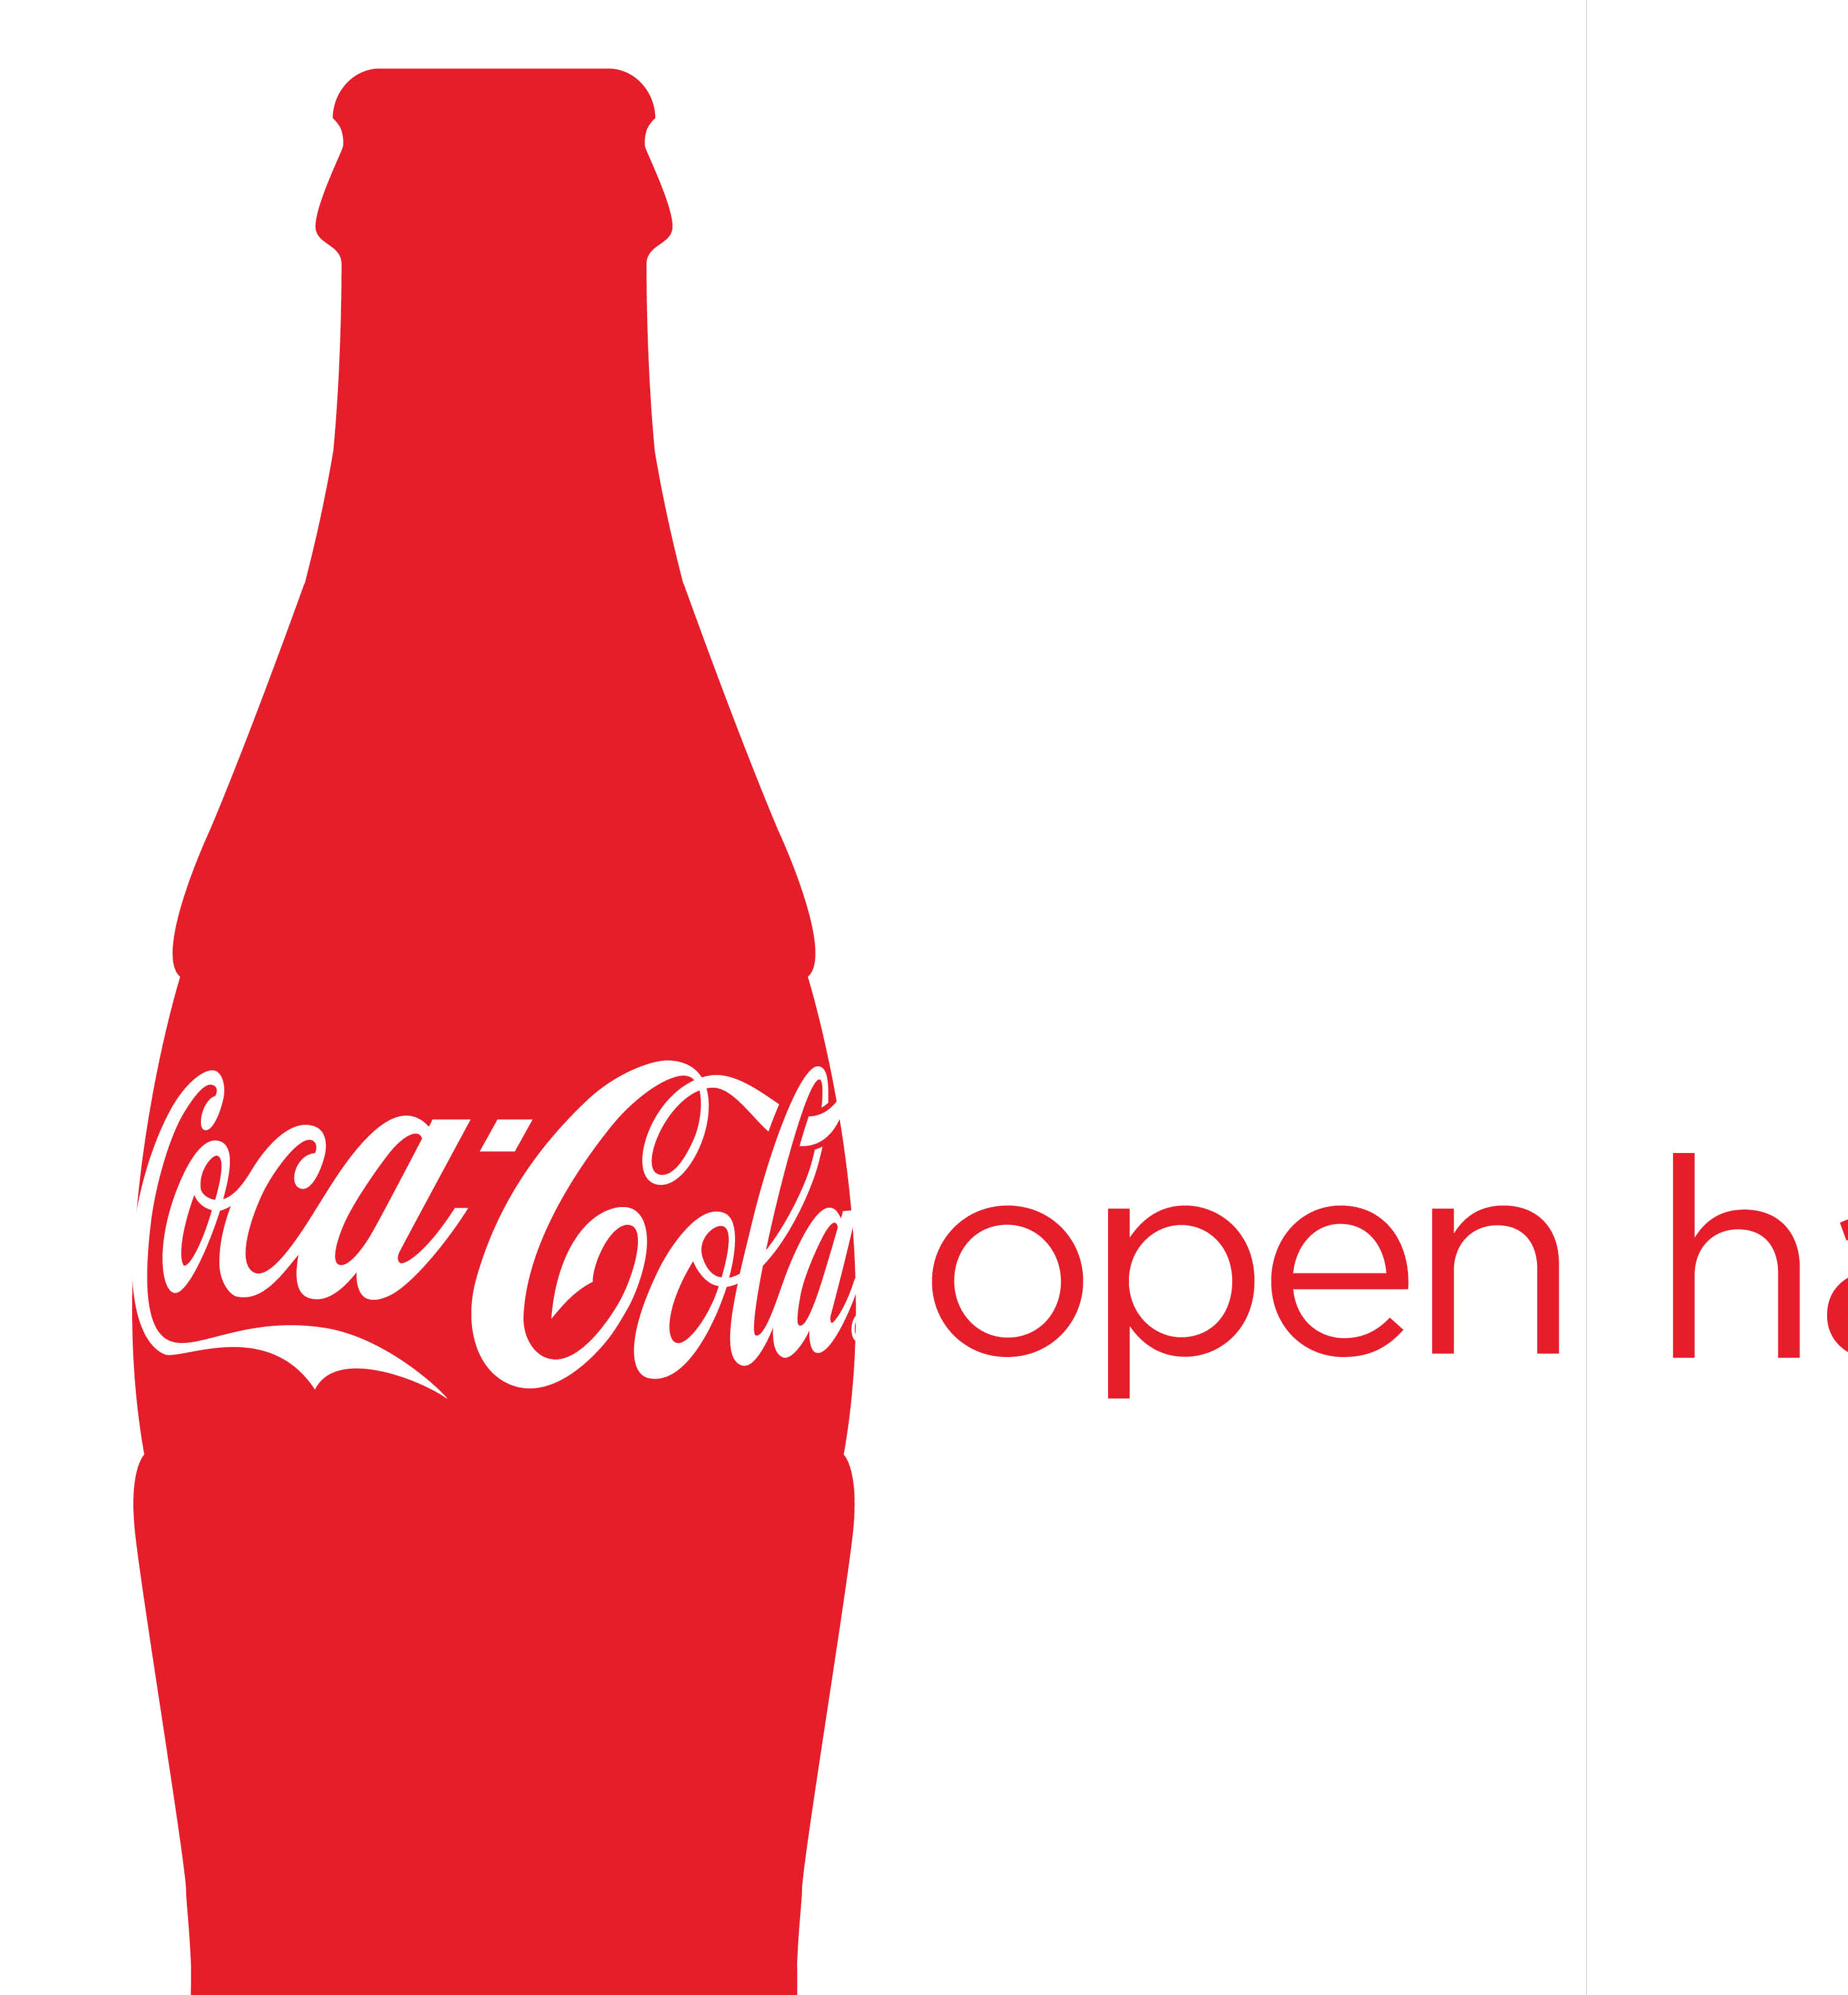 Industria alimentare Coca-Cola Germany Il sistema Progetto 1: Contatto indiretto lubrificato con olio, 7 bar Impiego: Riempimento, pulizia delle bottiglie